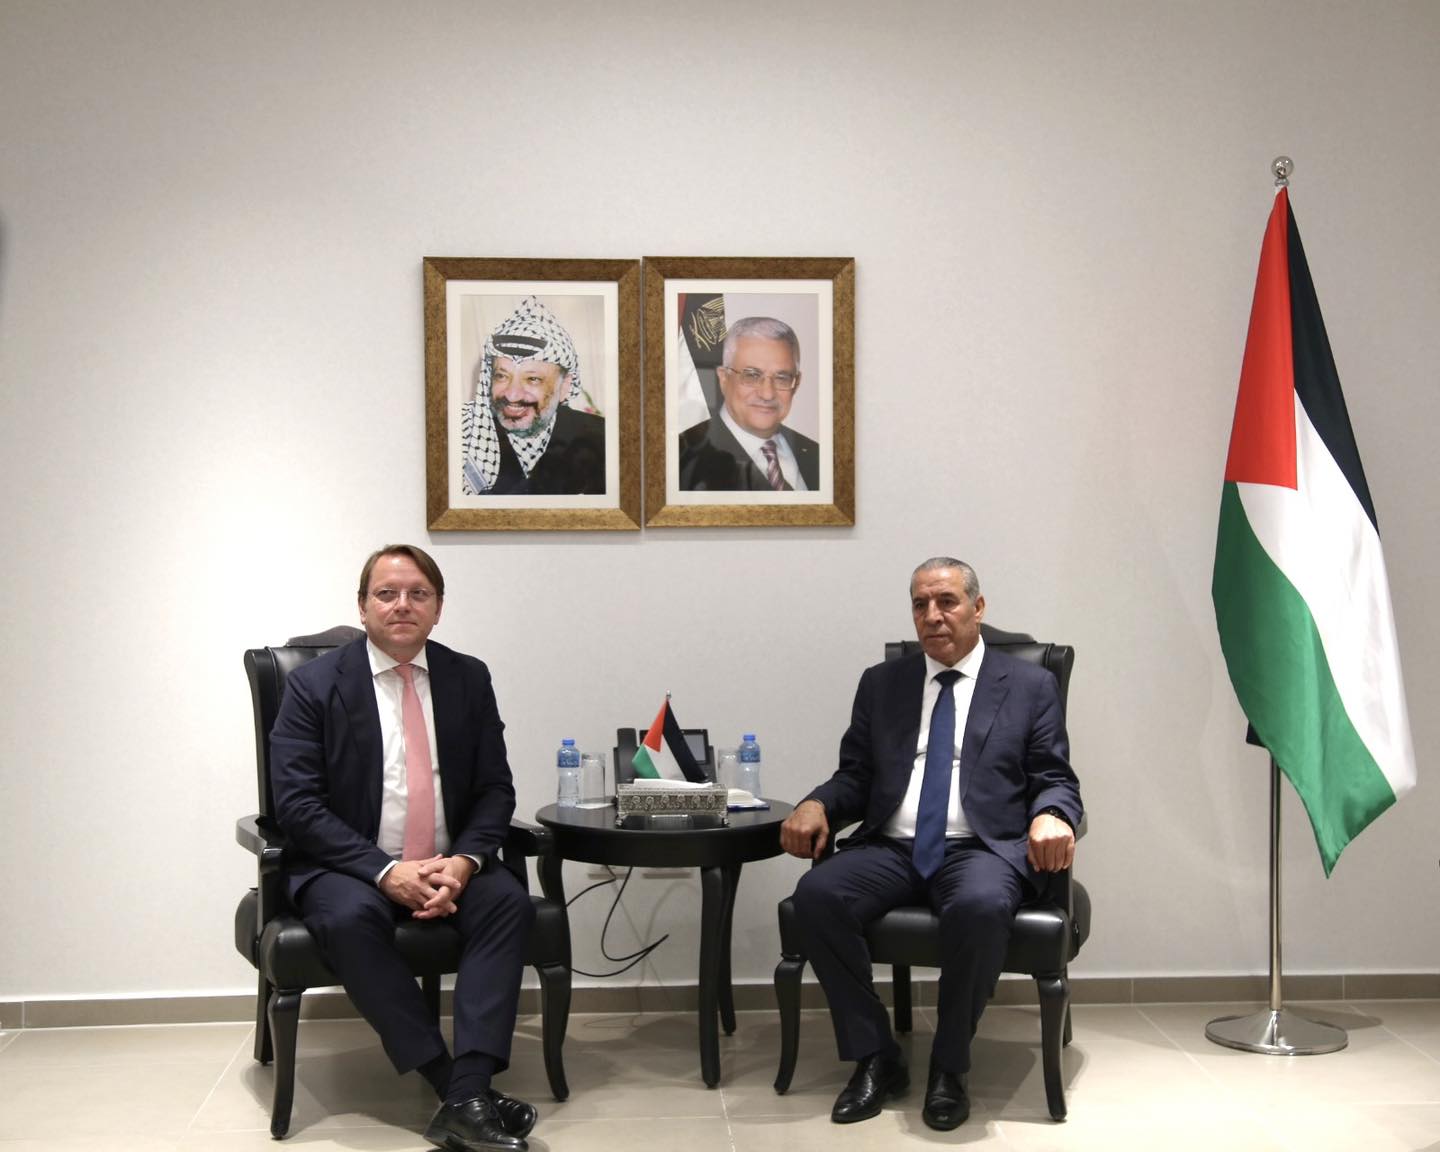 حسين الشيخ يلتقي مفوض الاتحاد الأوروبي أوليفر فارهيلي في رام الله
